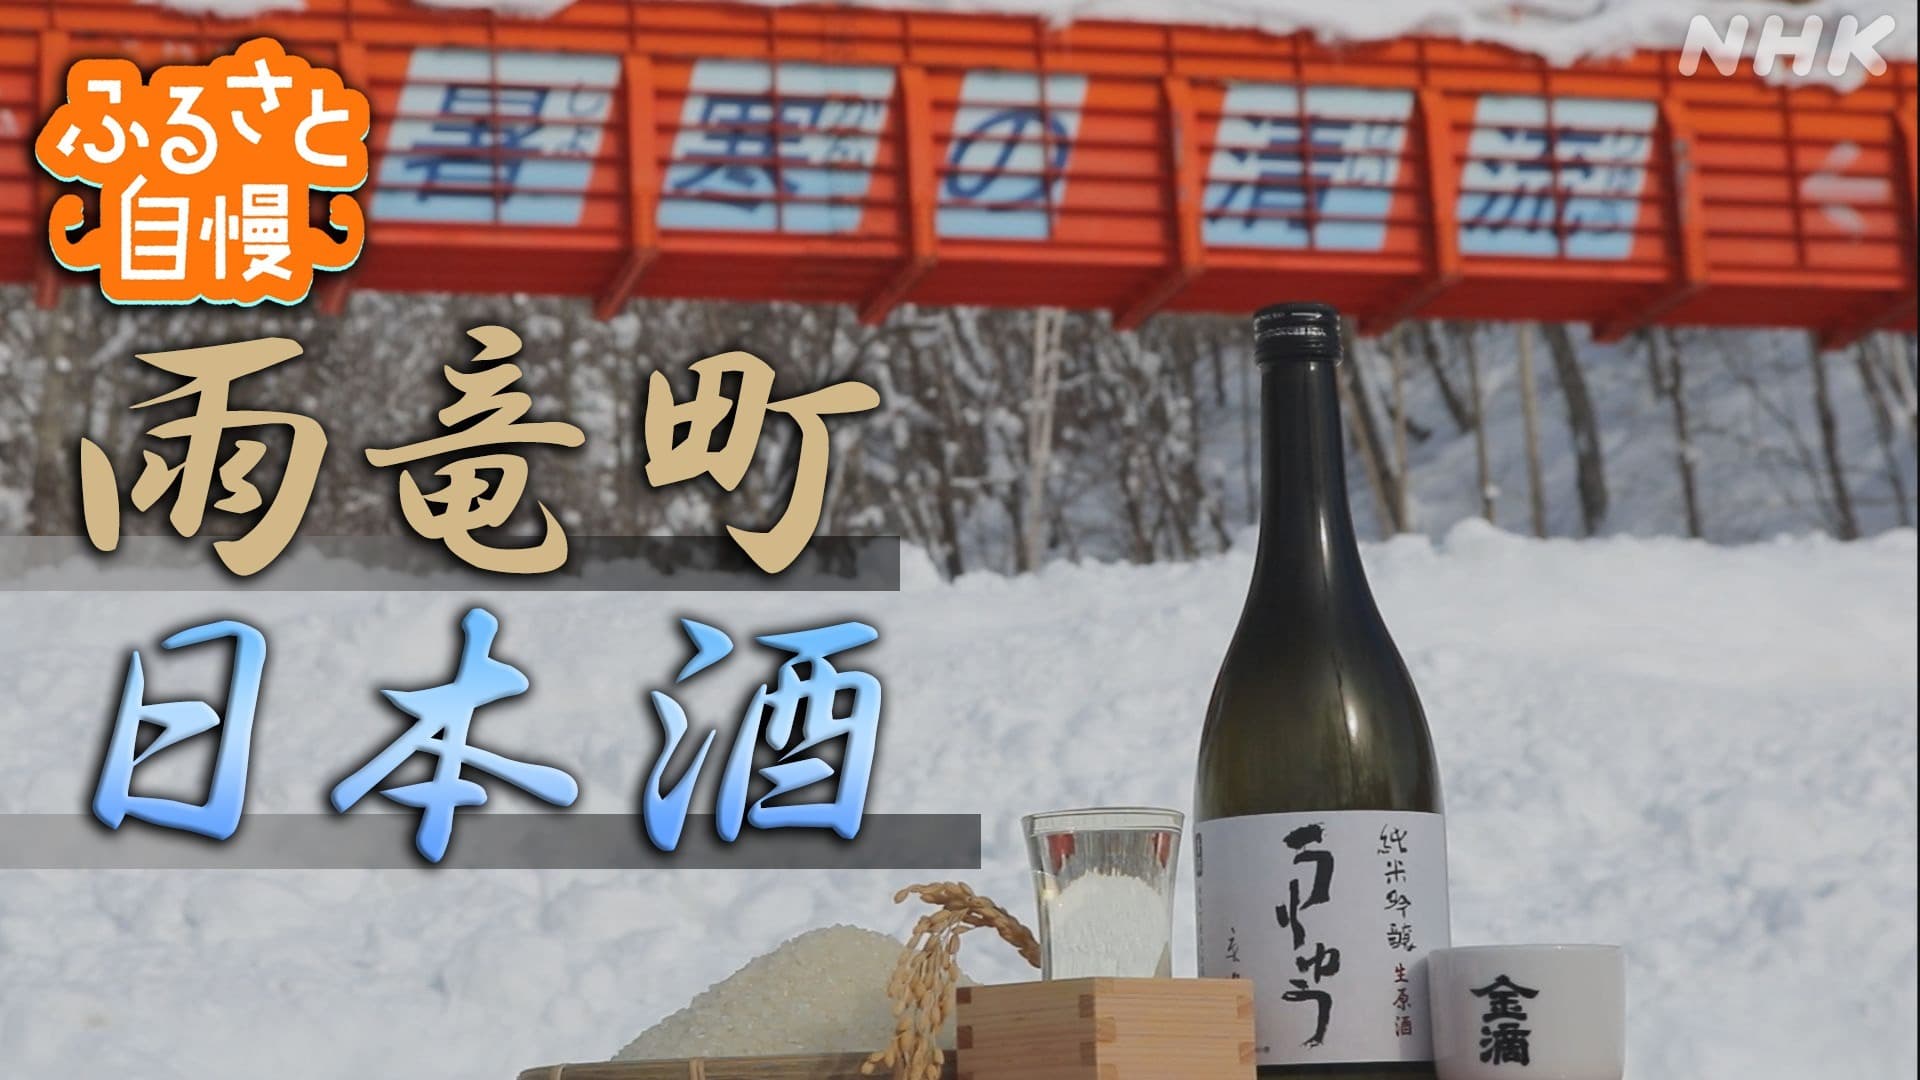 【ふるさと自慢】雨竜町「特産の米を使った日本酒」